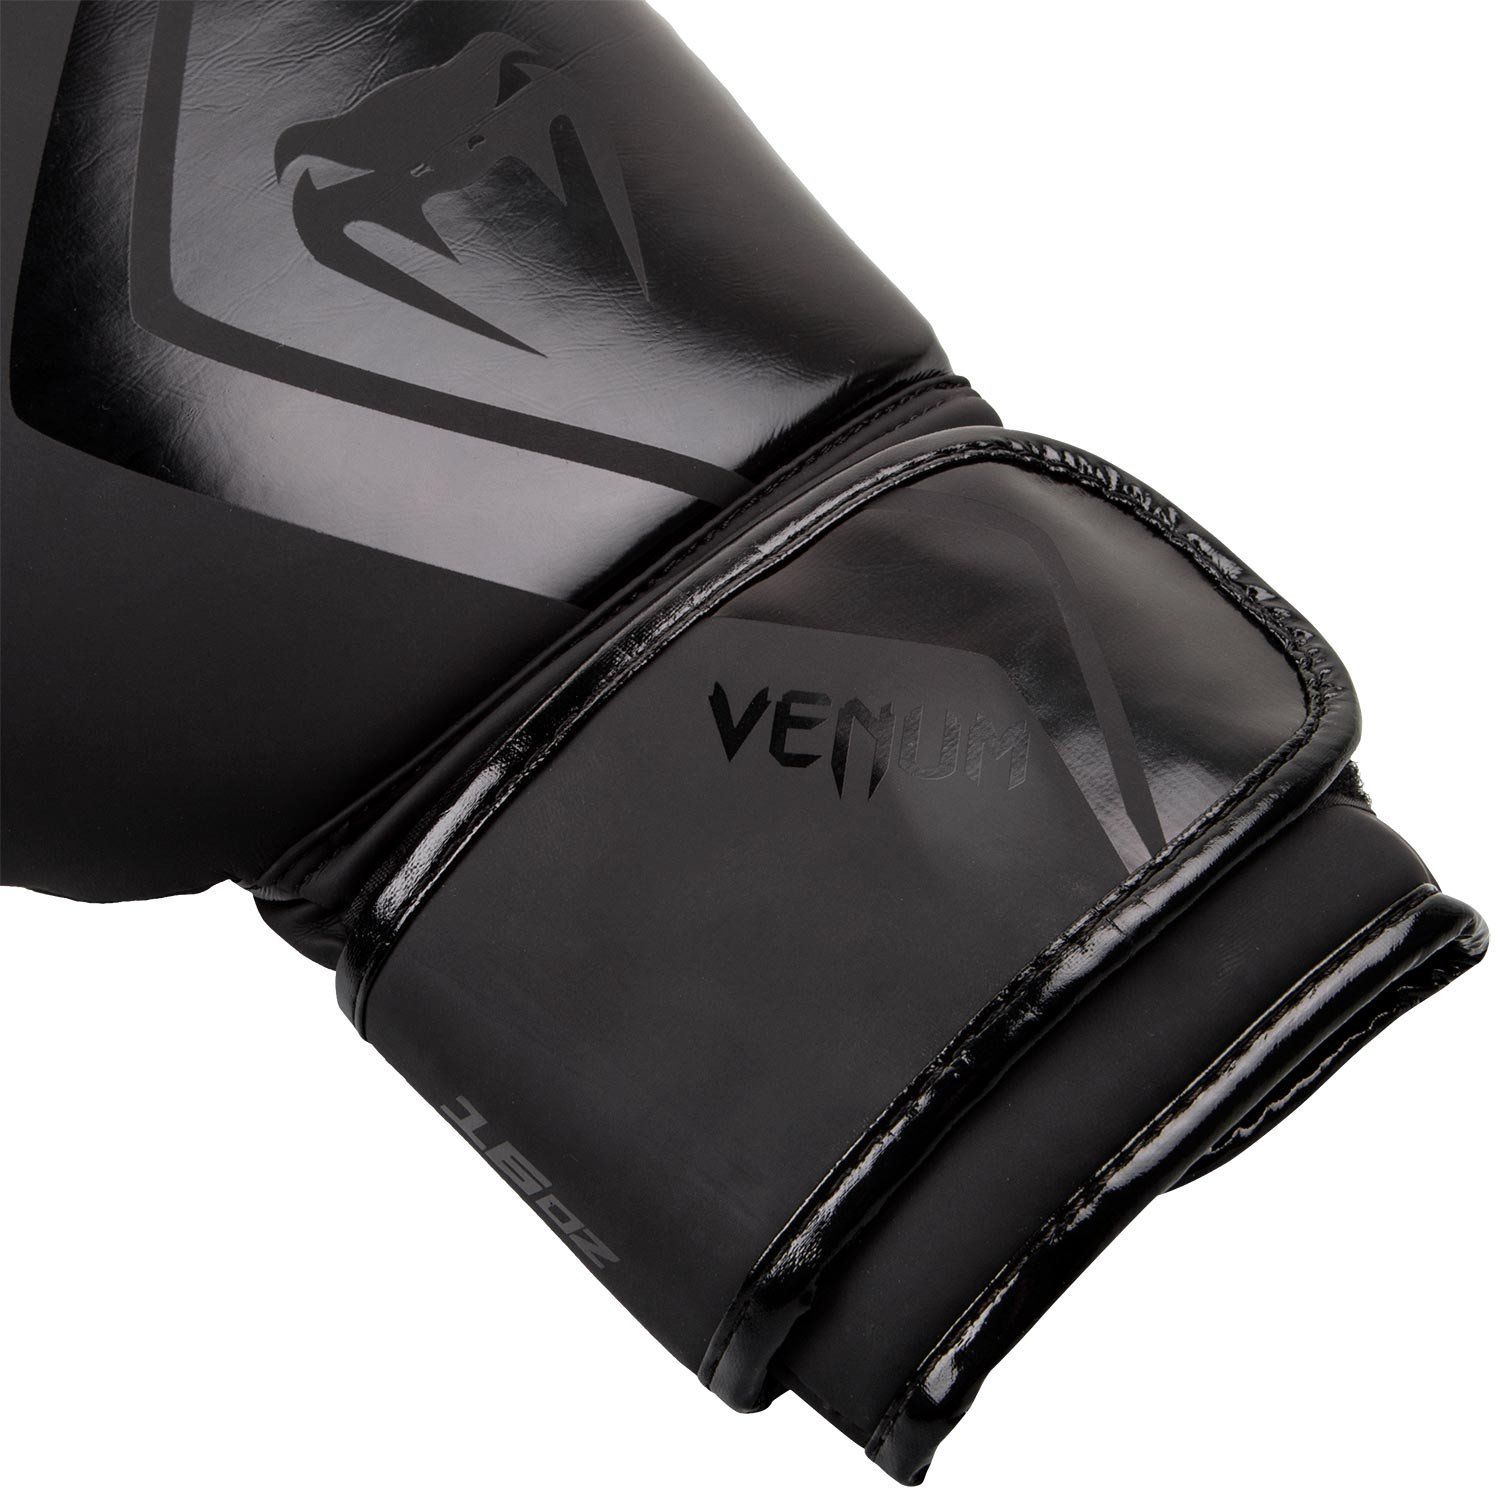 Venum Contender 2.0 Boxing Gloves - Black - 16 oz - Adult - image 3 of 7